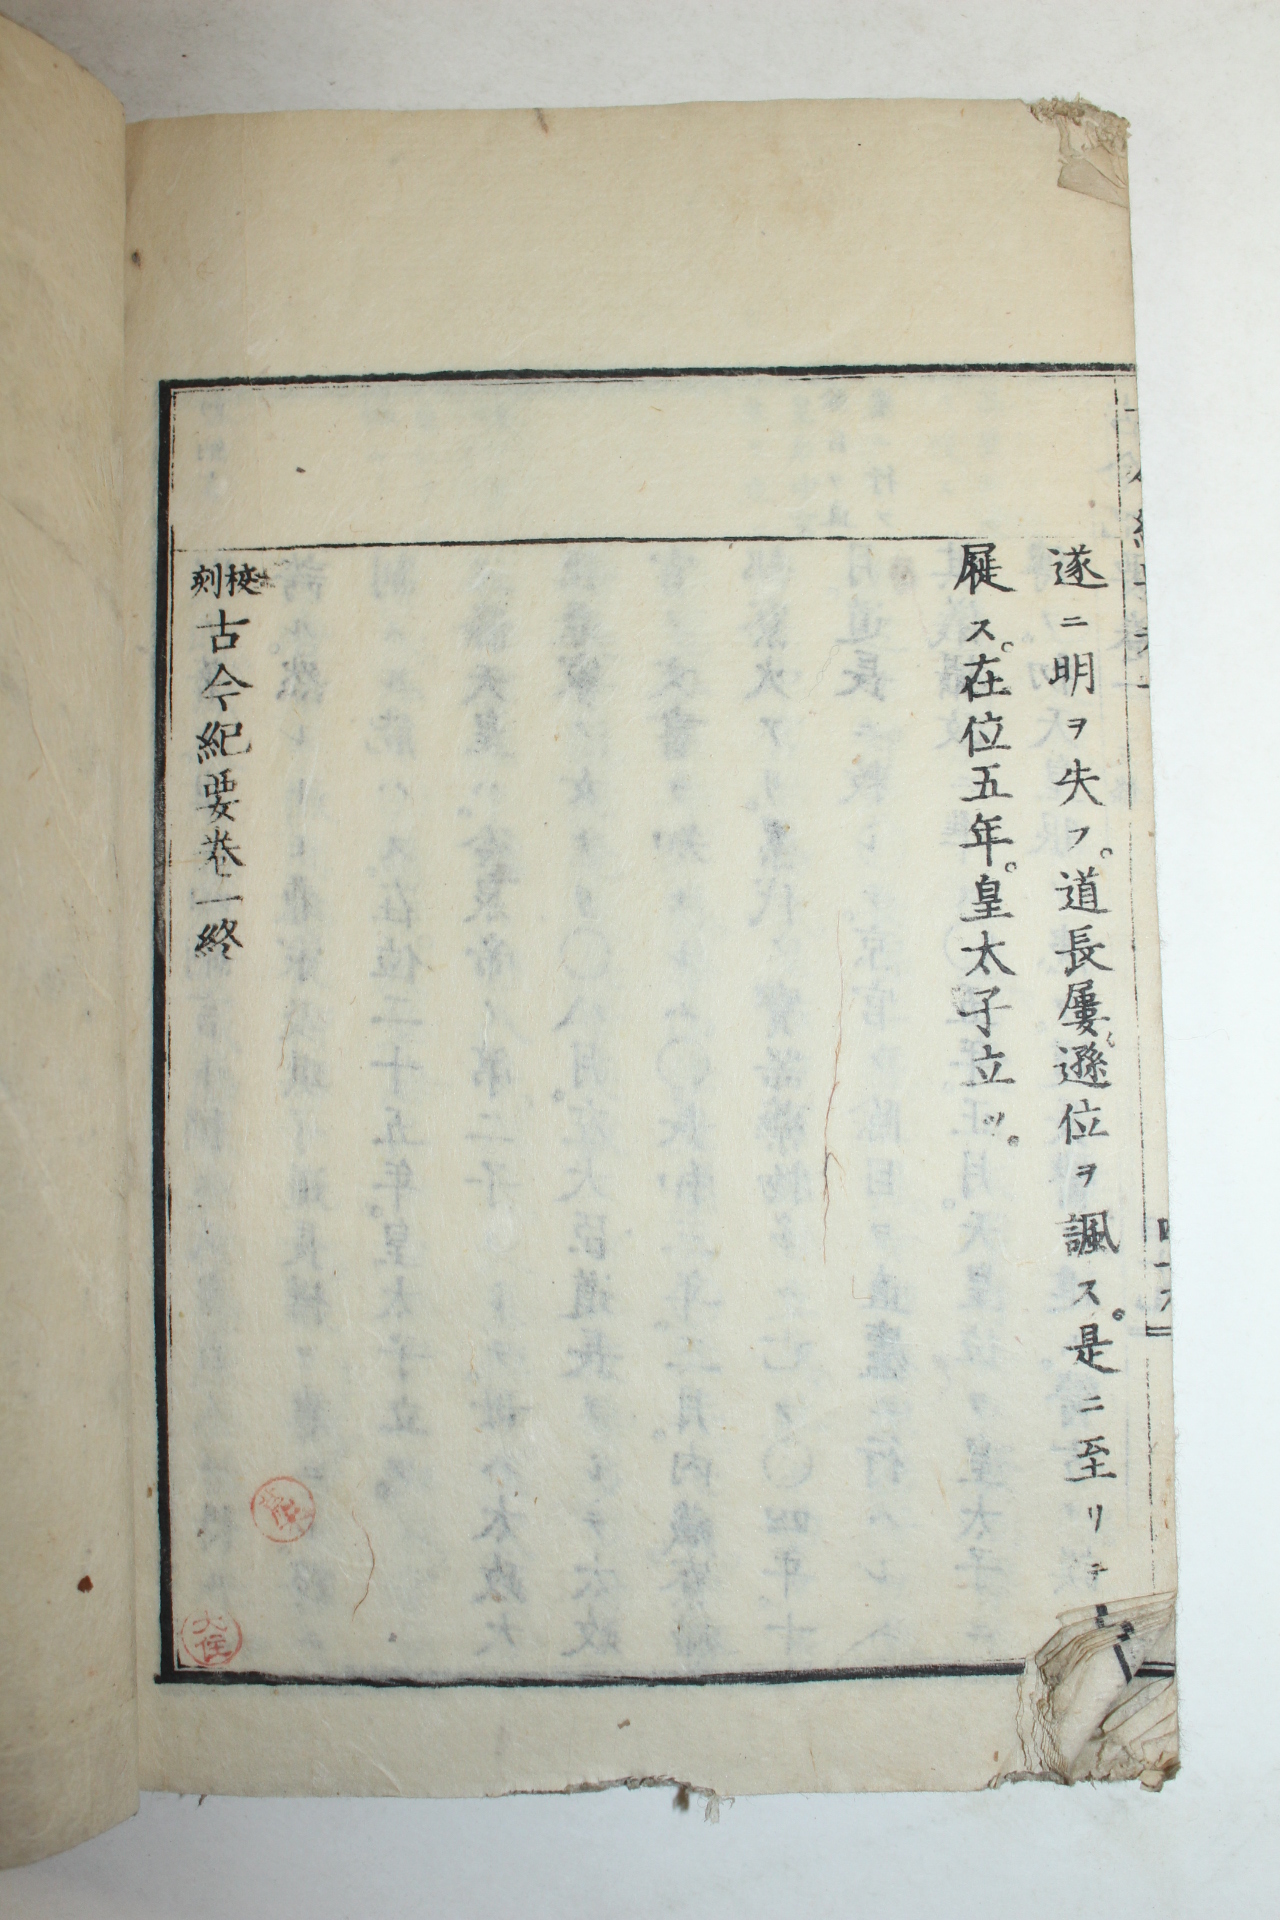 1880년 일본목판본 교각고금기요(古今紀要) 권1  1책